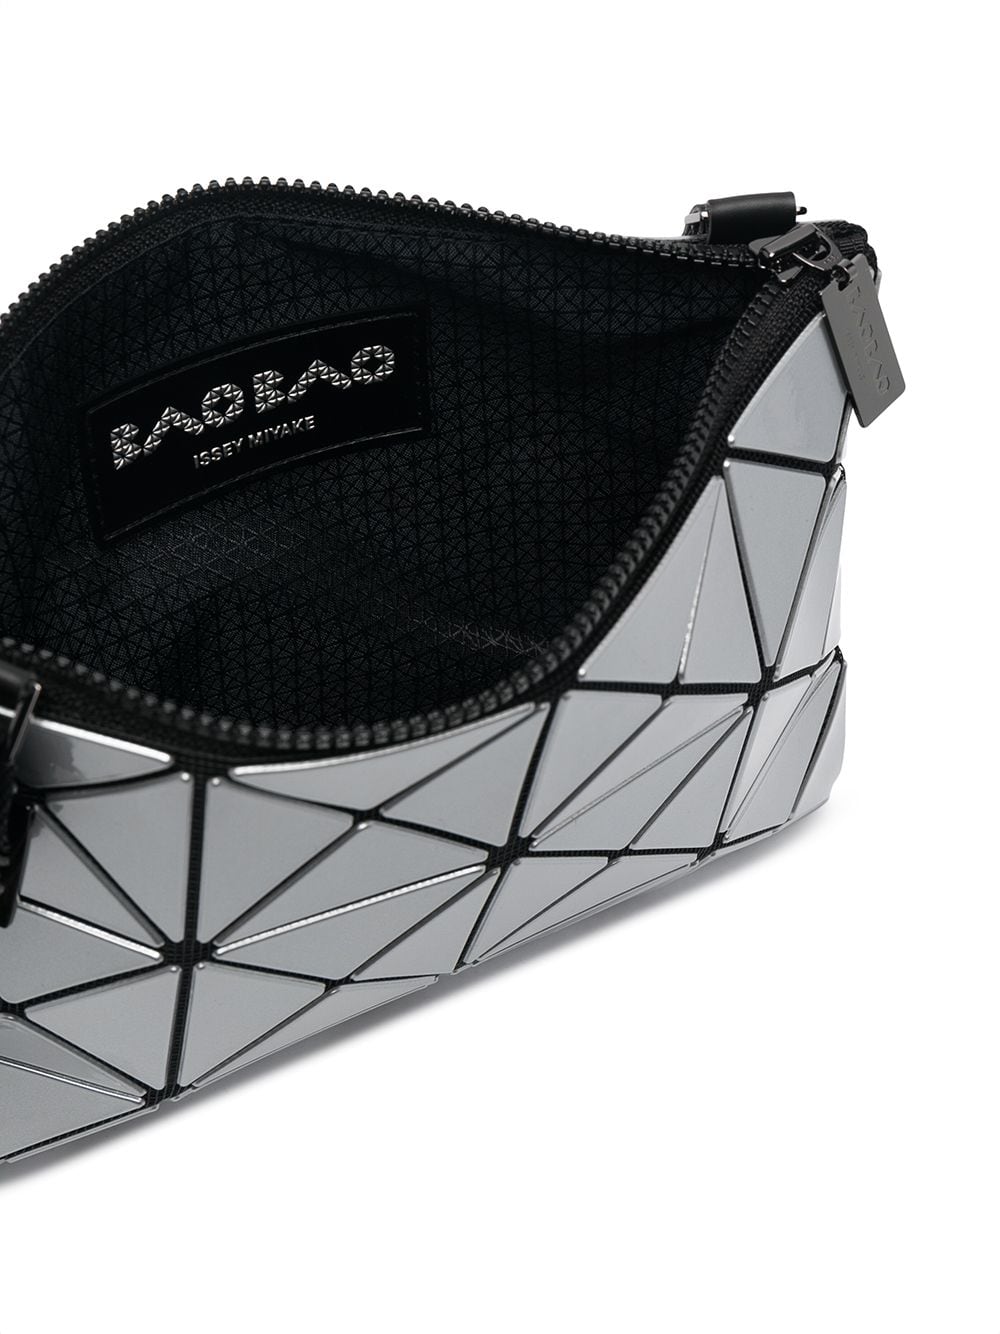 Bao Bao Issey Miyake Carton metallic-effect cross-body Bag - Farfetch